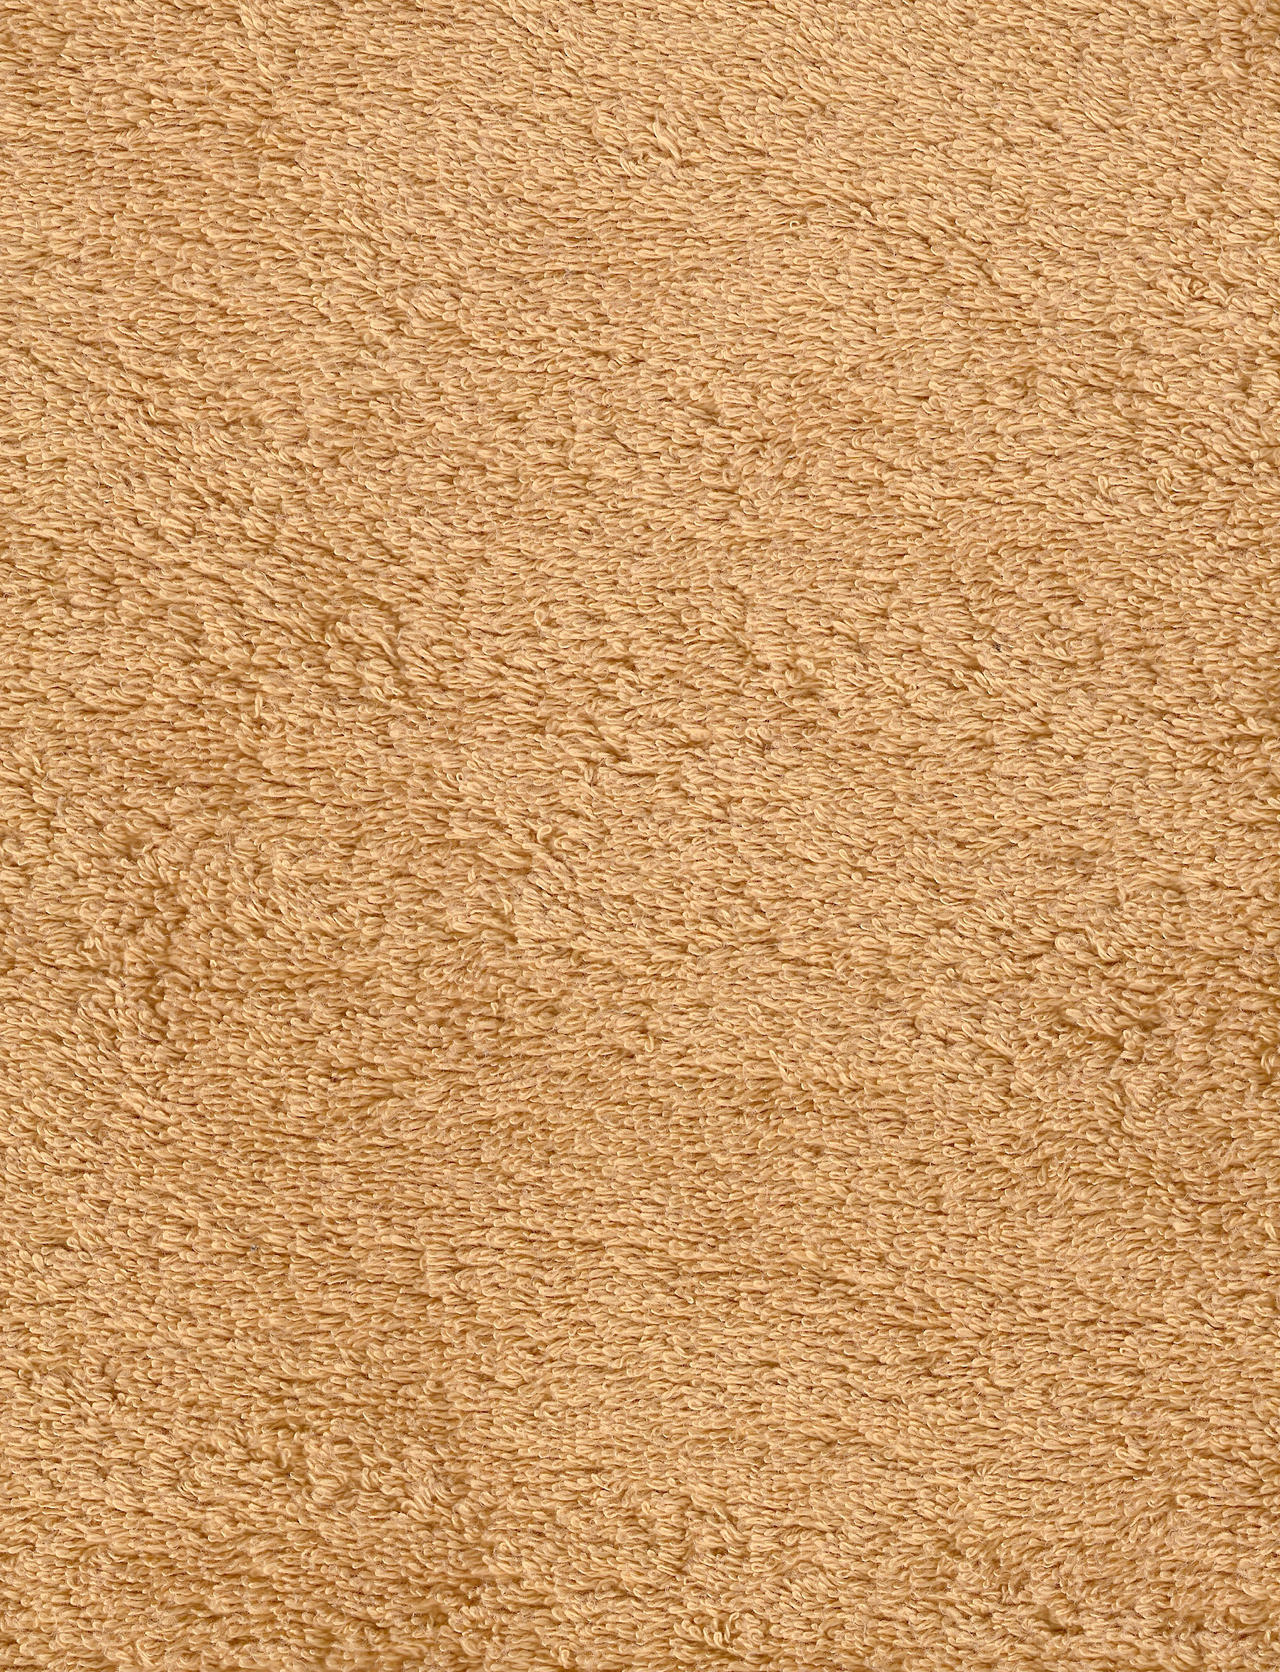 Tan Carpet Fabric Texture